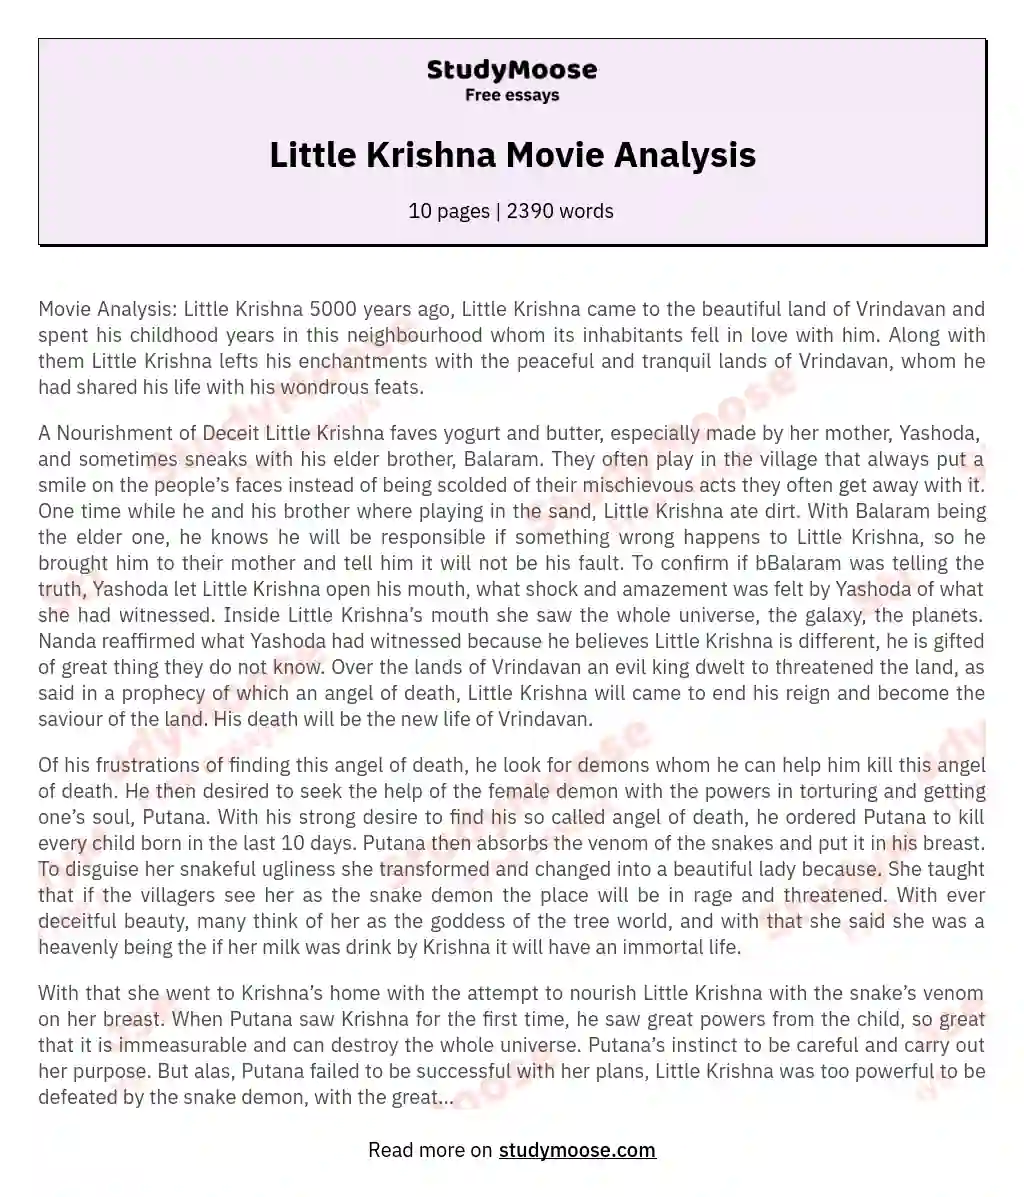 Little Krishna Movie Analysis essay